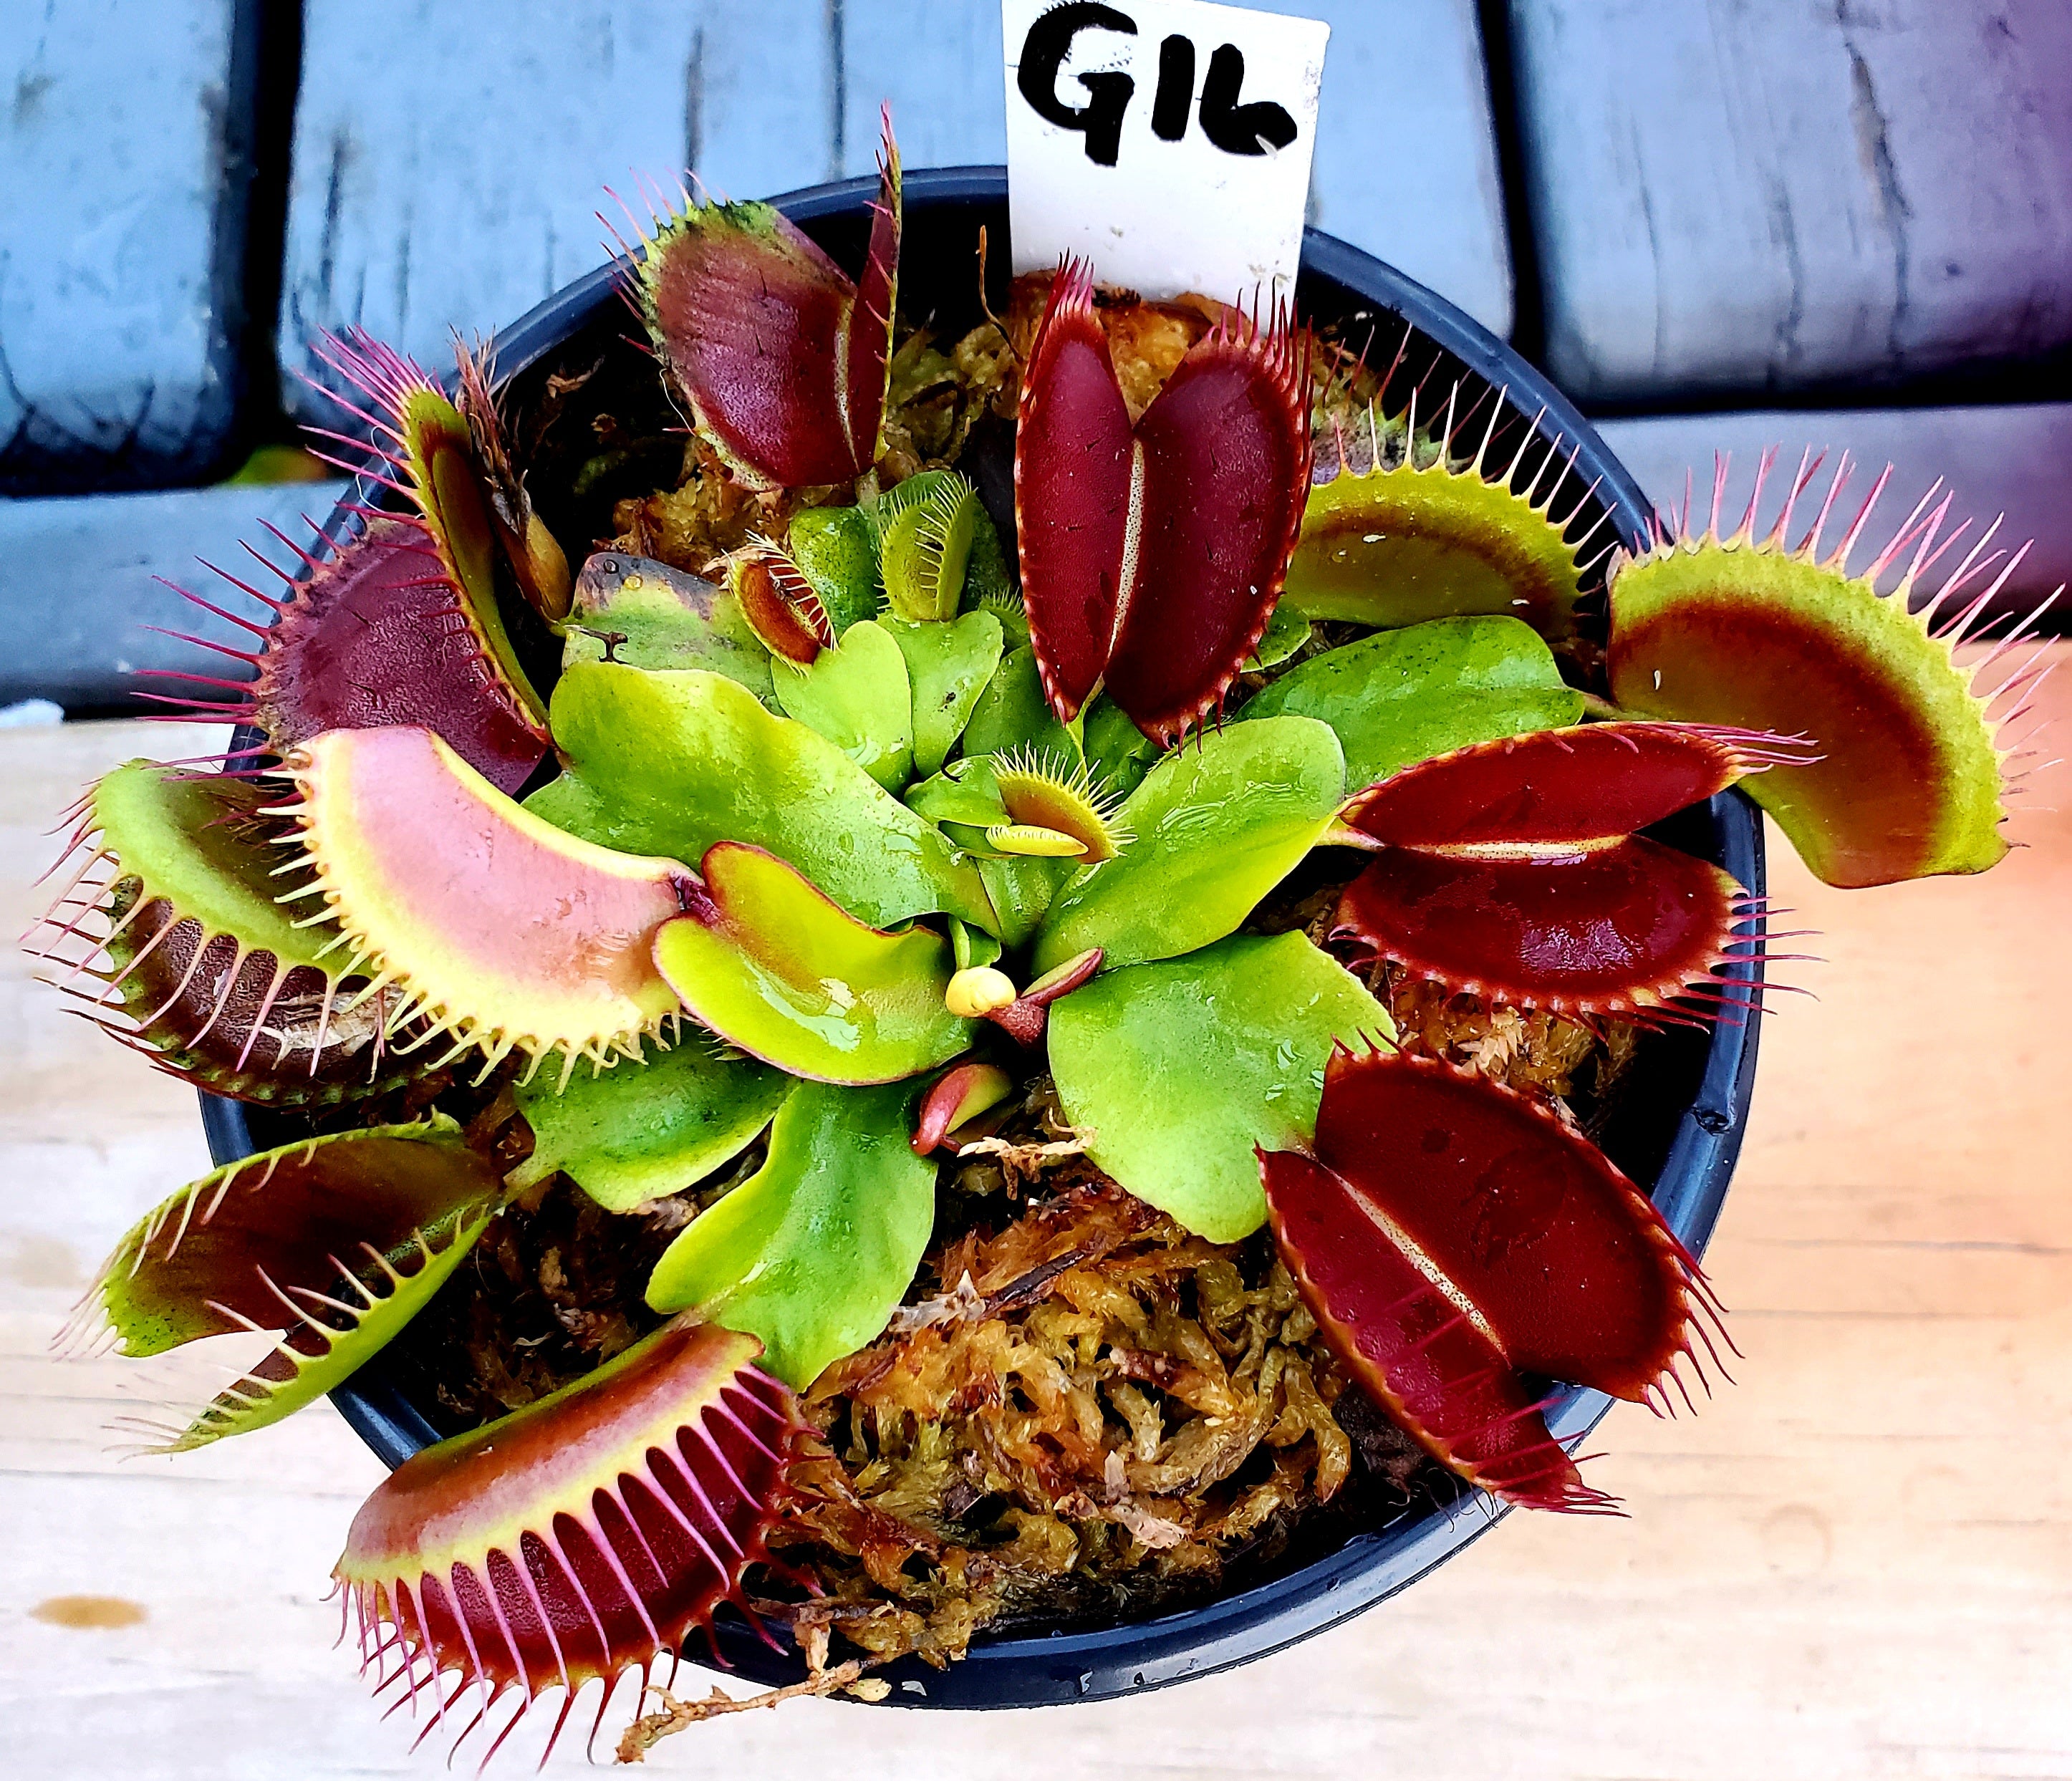 G16 Slack's Giant - Venus Flytrap Carnivorous Plant